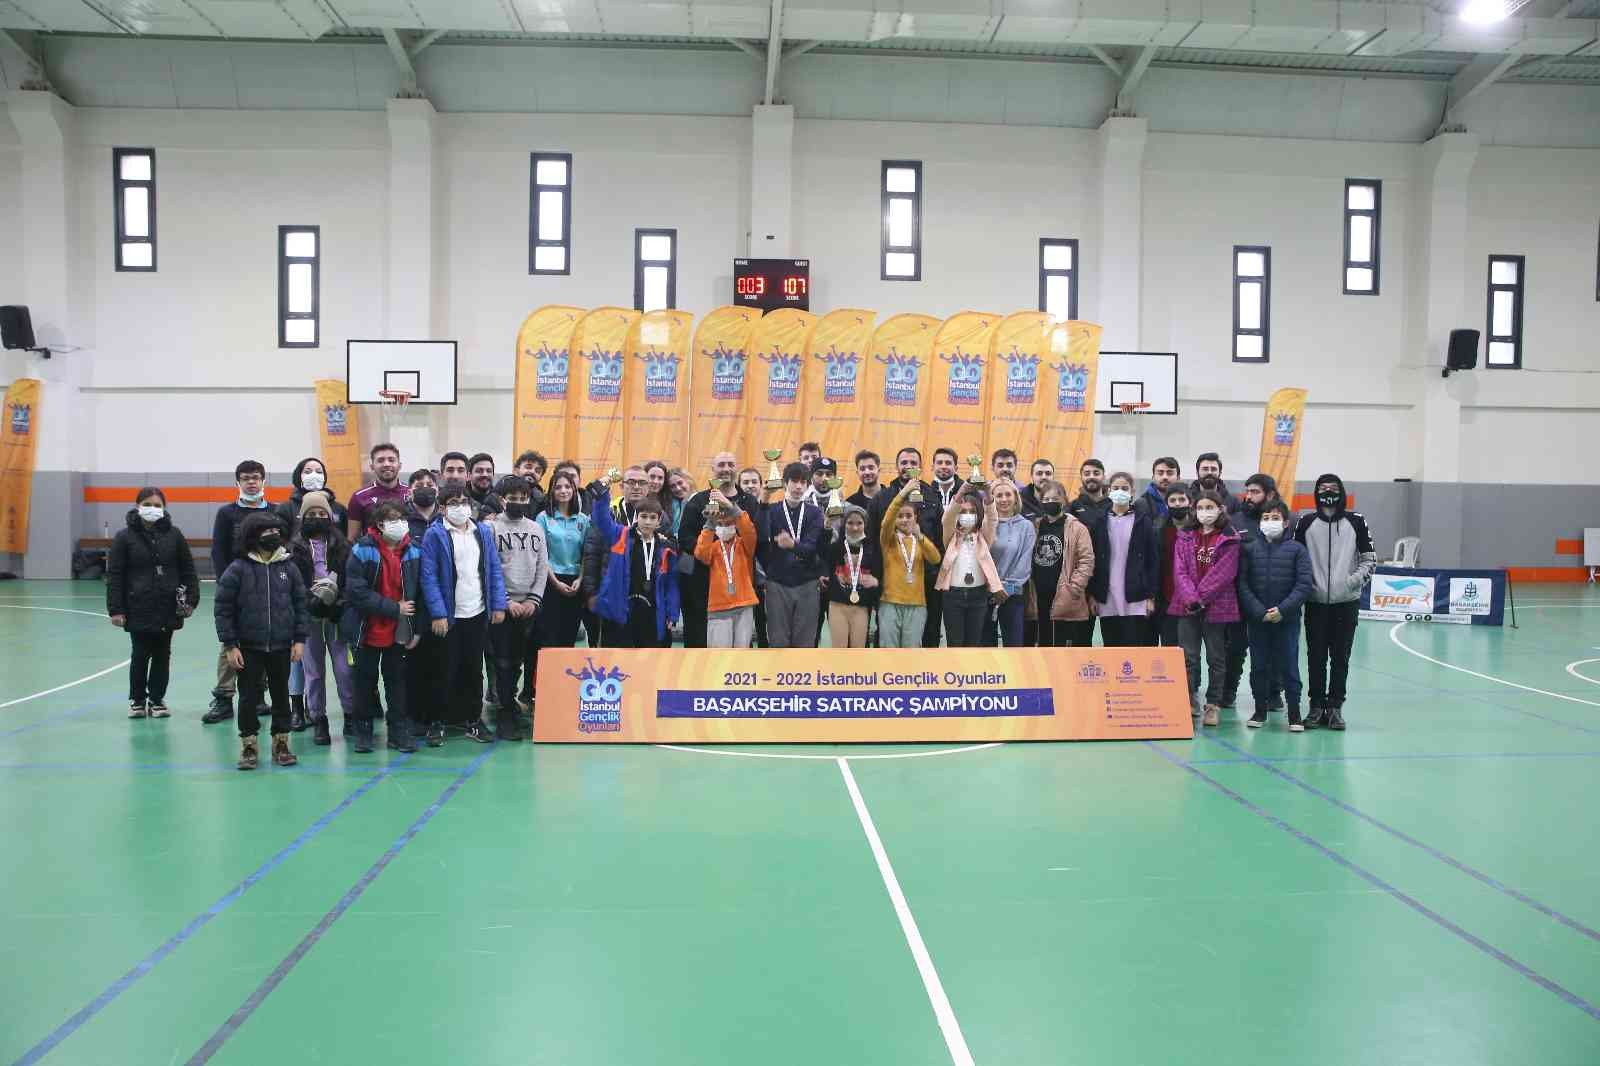 Başakşehir’in satranç şampiyonları belli oldu #istanbul